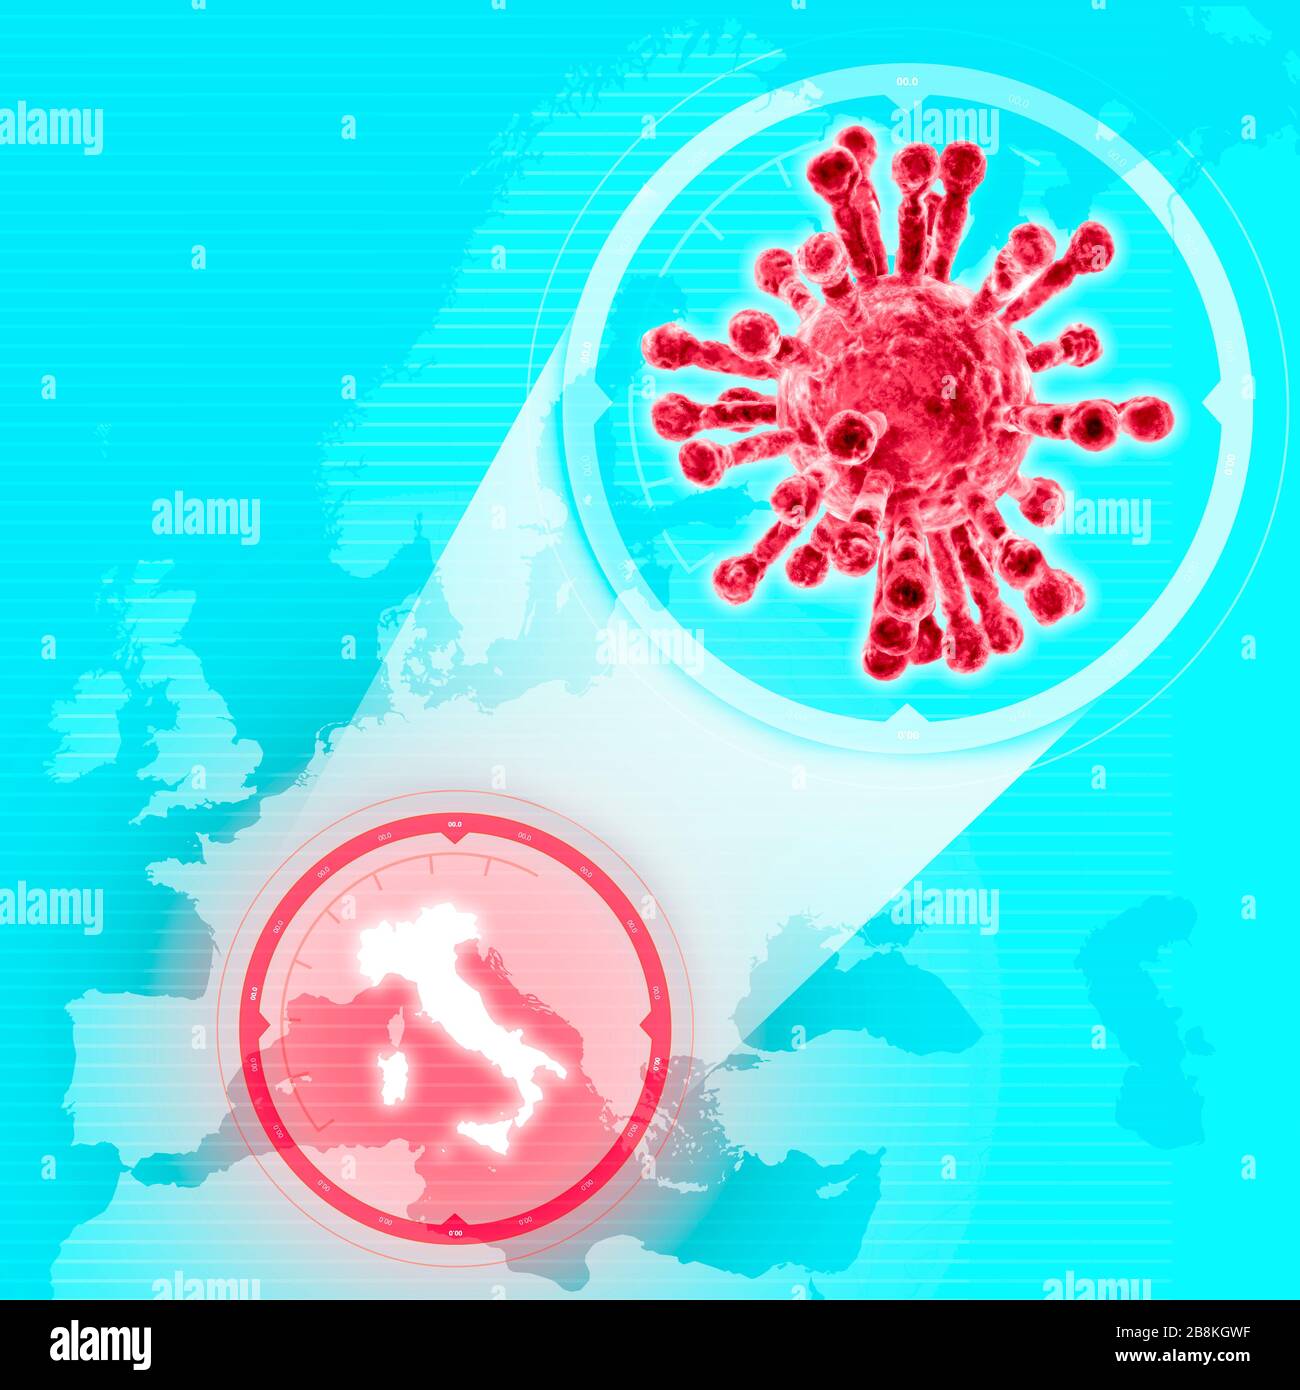 Mappa Italia coronavirus, mappa europea con l'Italia evidenziata. Diffusione Covid-19. Propagazione dell'infezione virale. Pandemia mondiale. Foto Stock